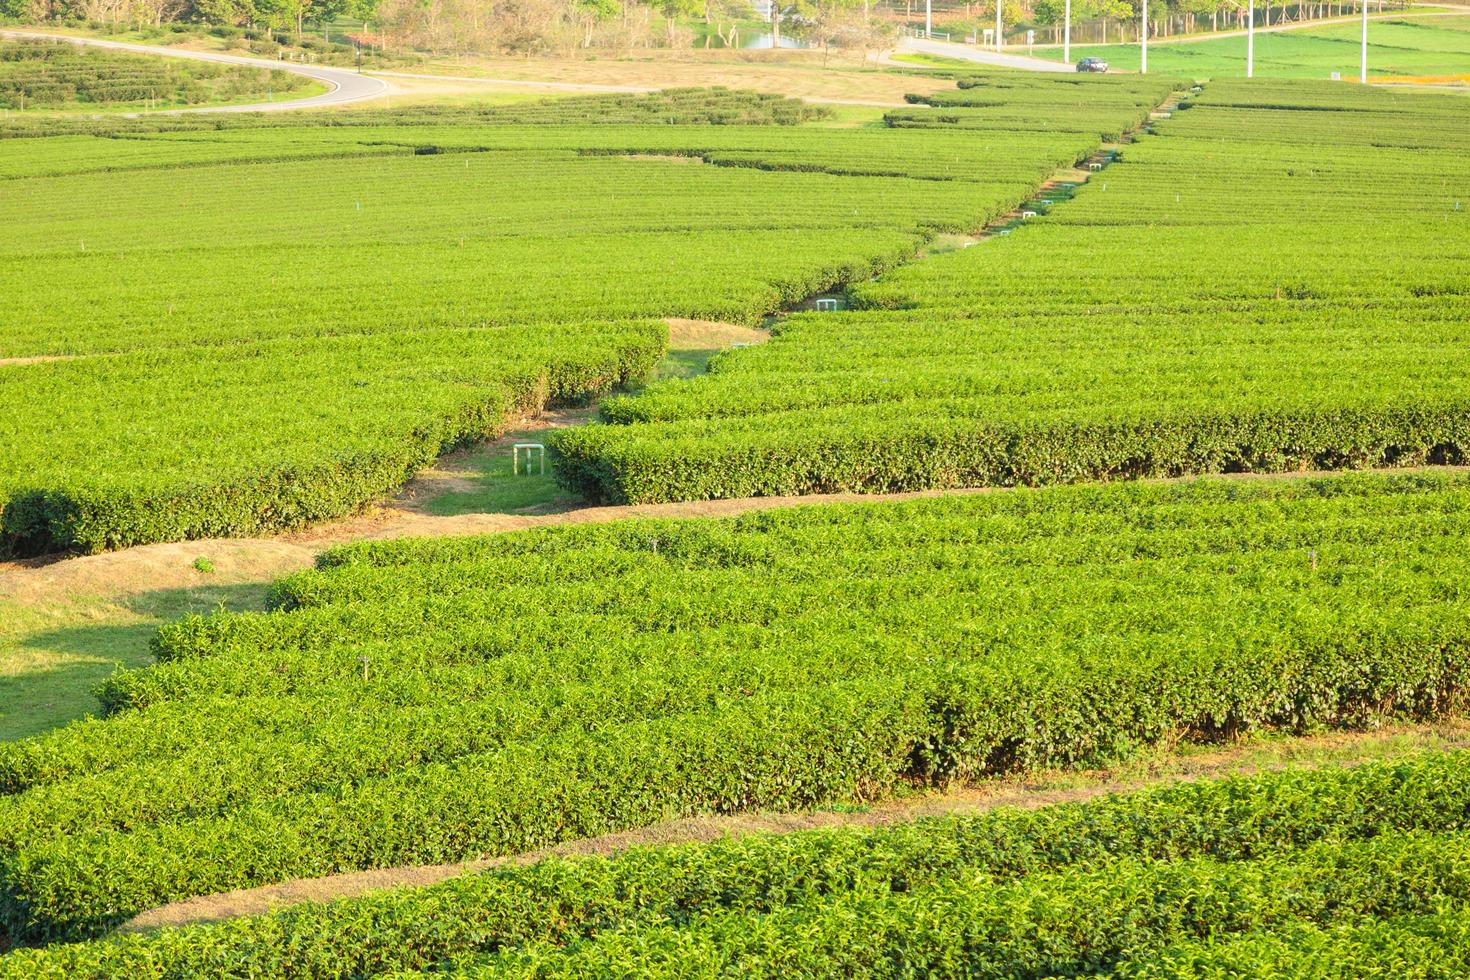 fattoria del tè in thailandia foto